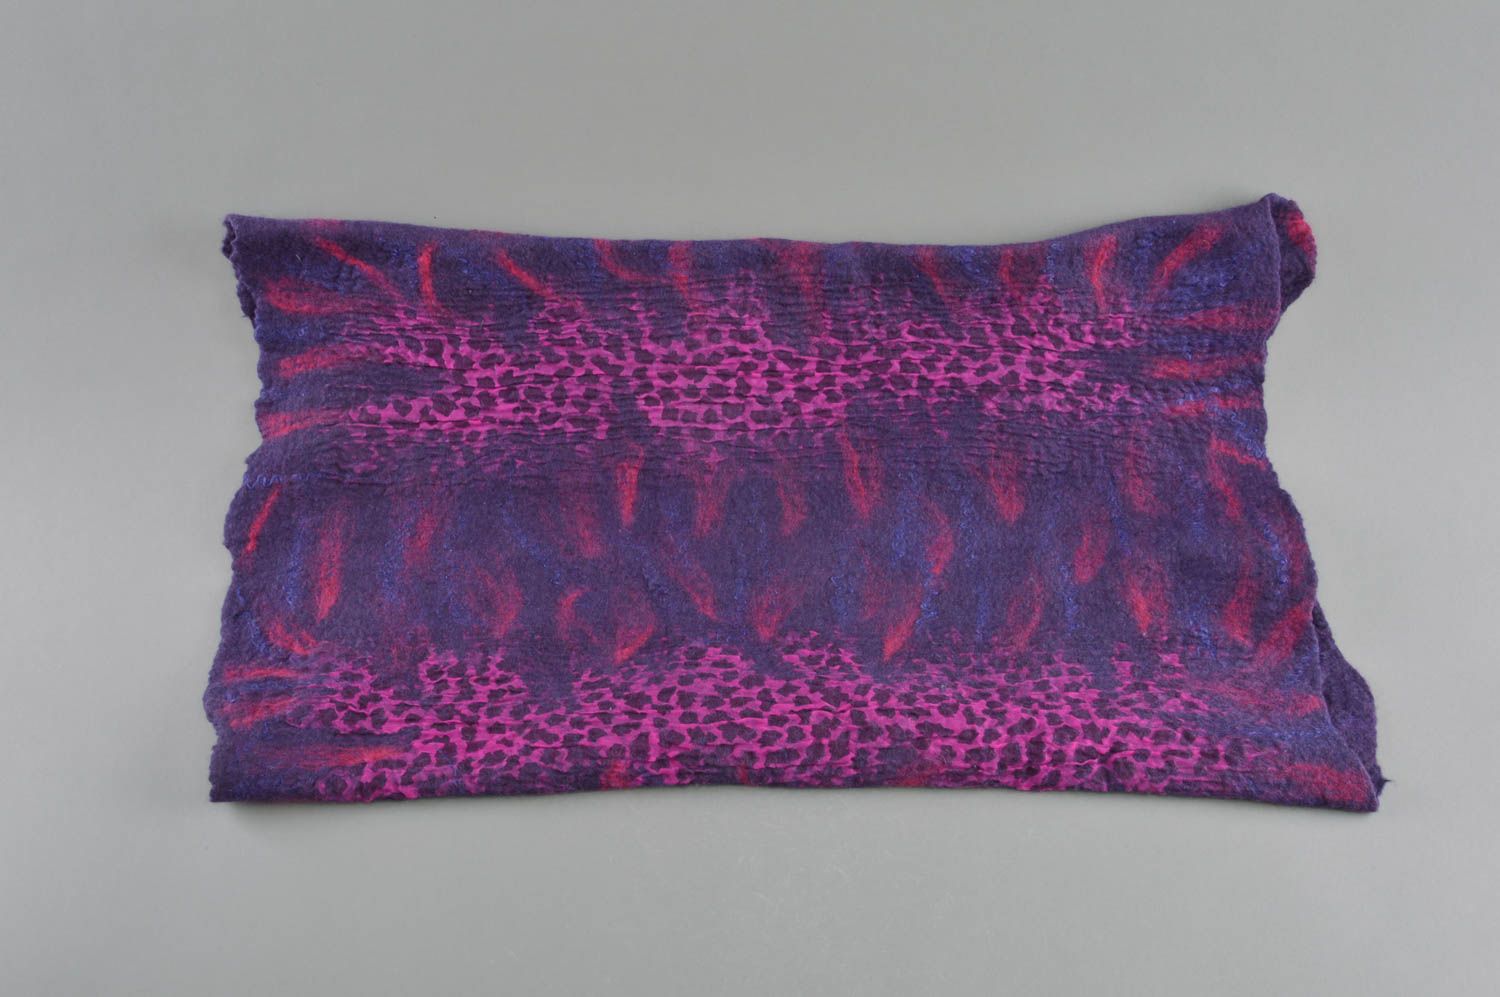 Snood en laine et soie technique de feutrage fait main violet foncé stylé photo 2